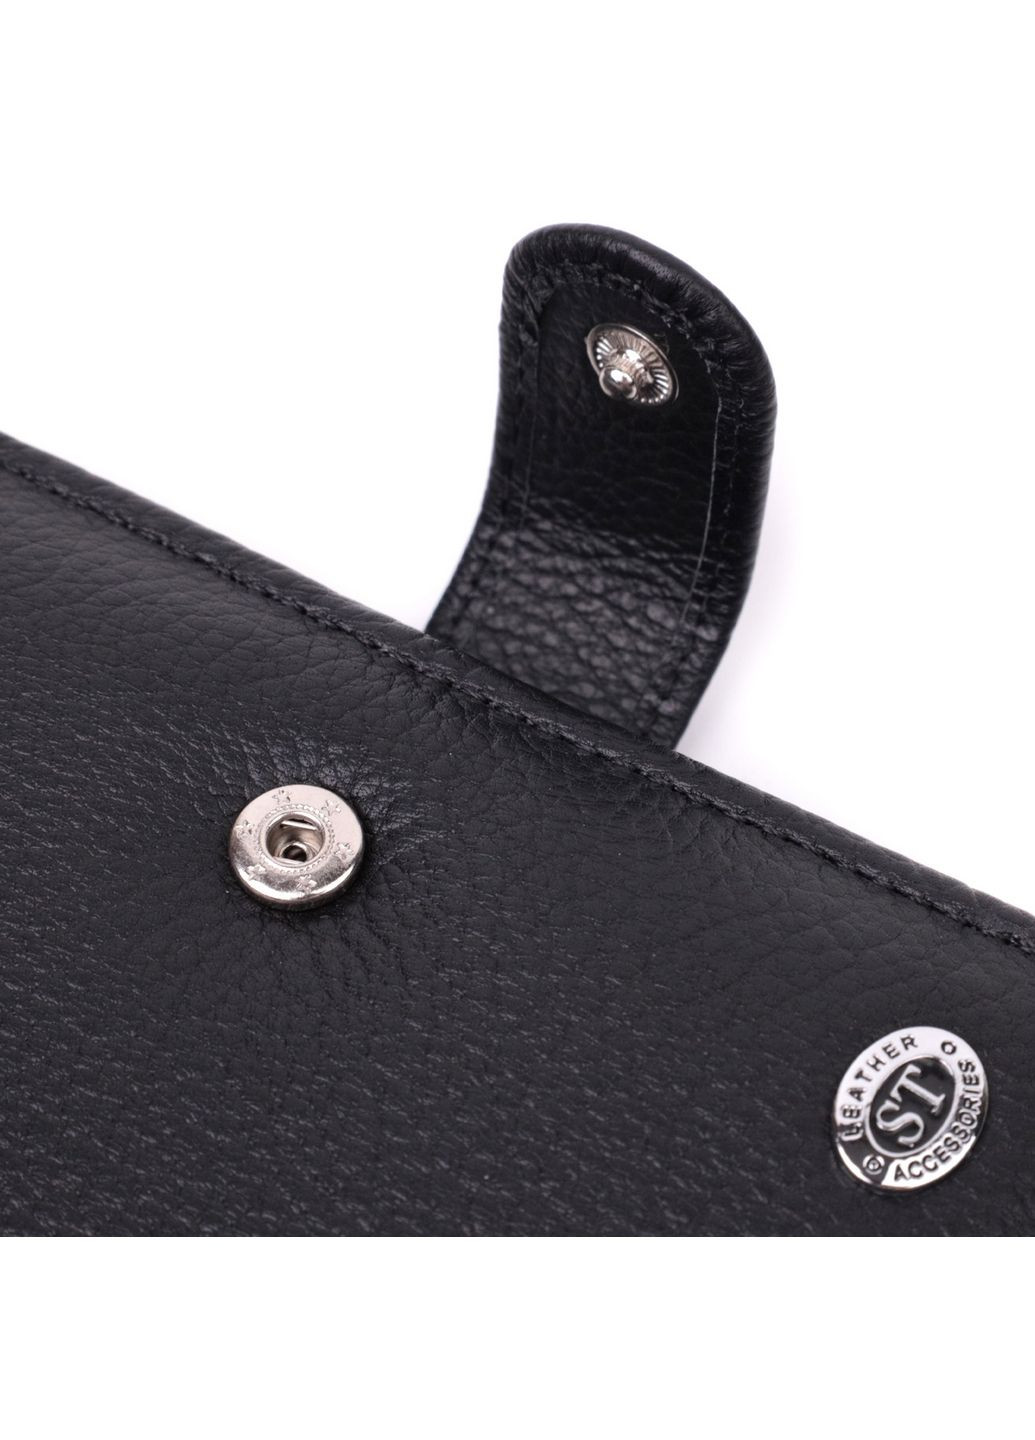 Кожаный мужской бумажник st leather (288183795)